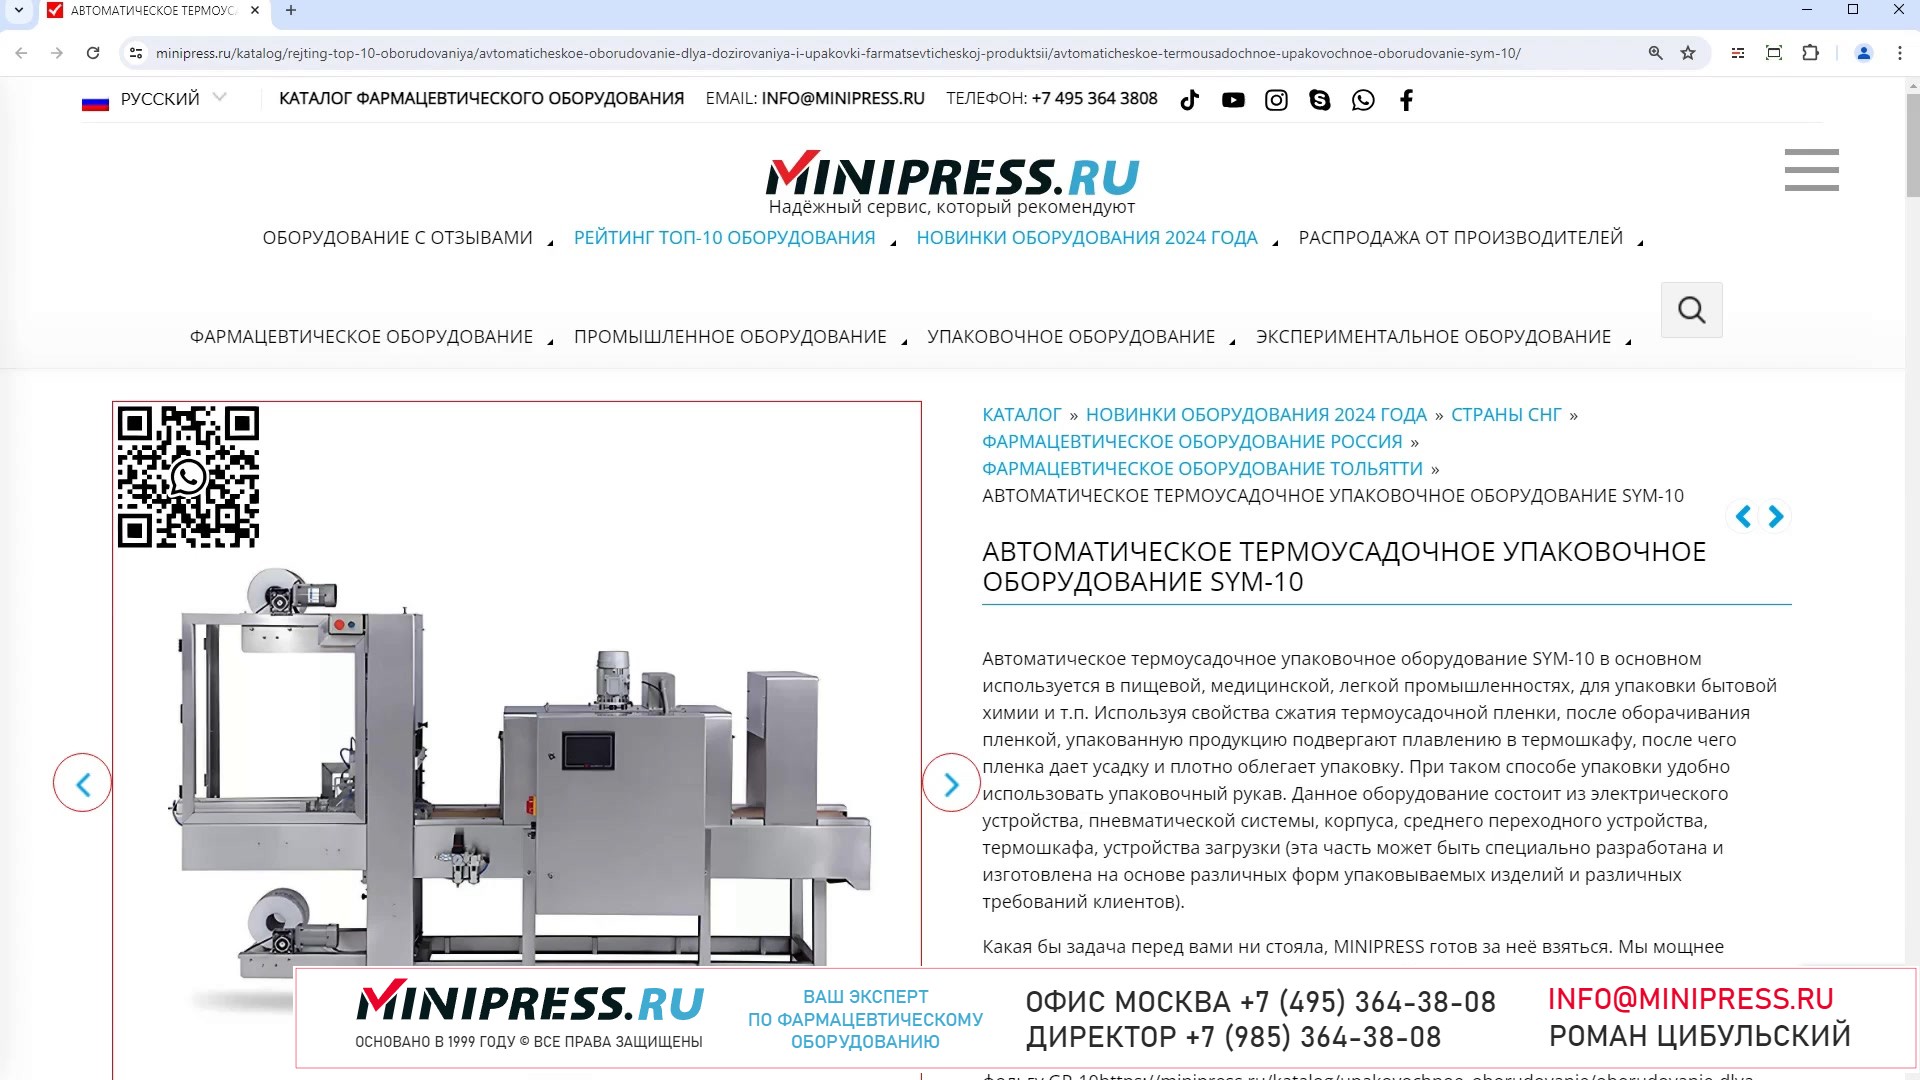 Minipress.ru Автоматическое термоусадочное упаковочное оборудование SYM-10